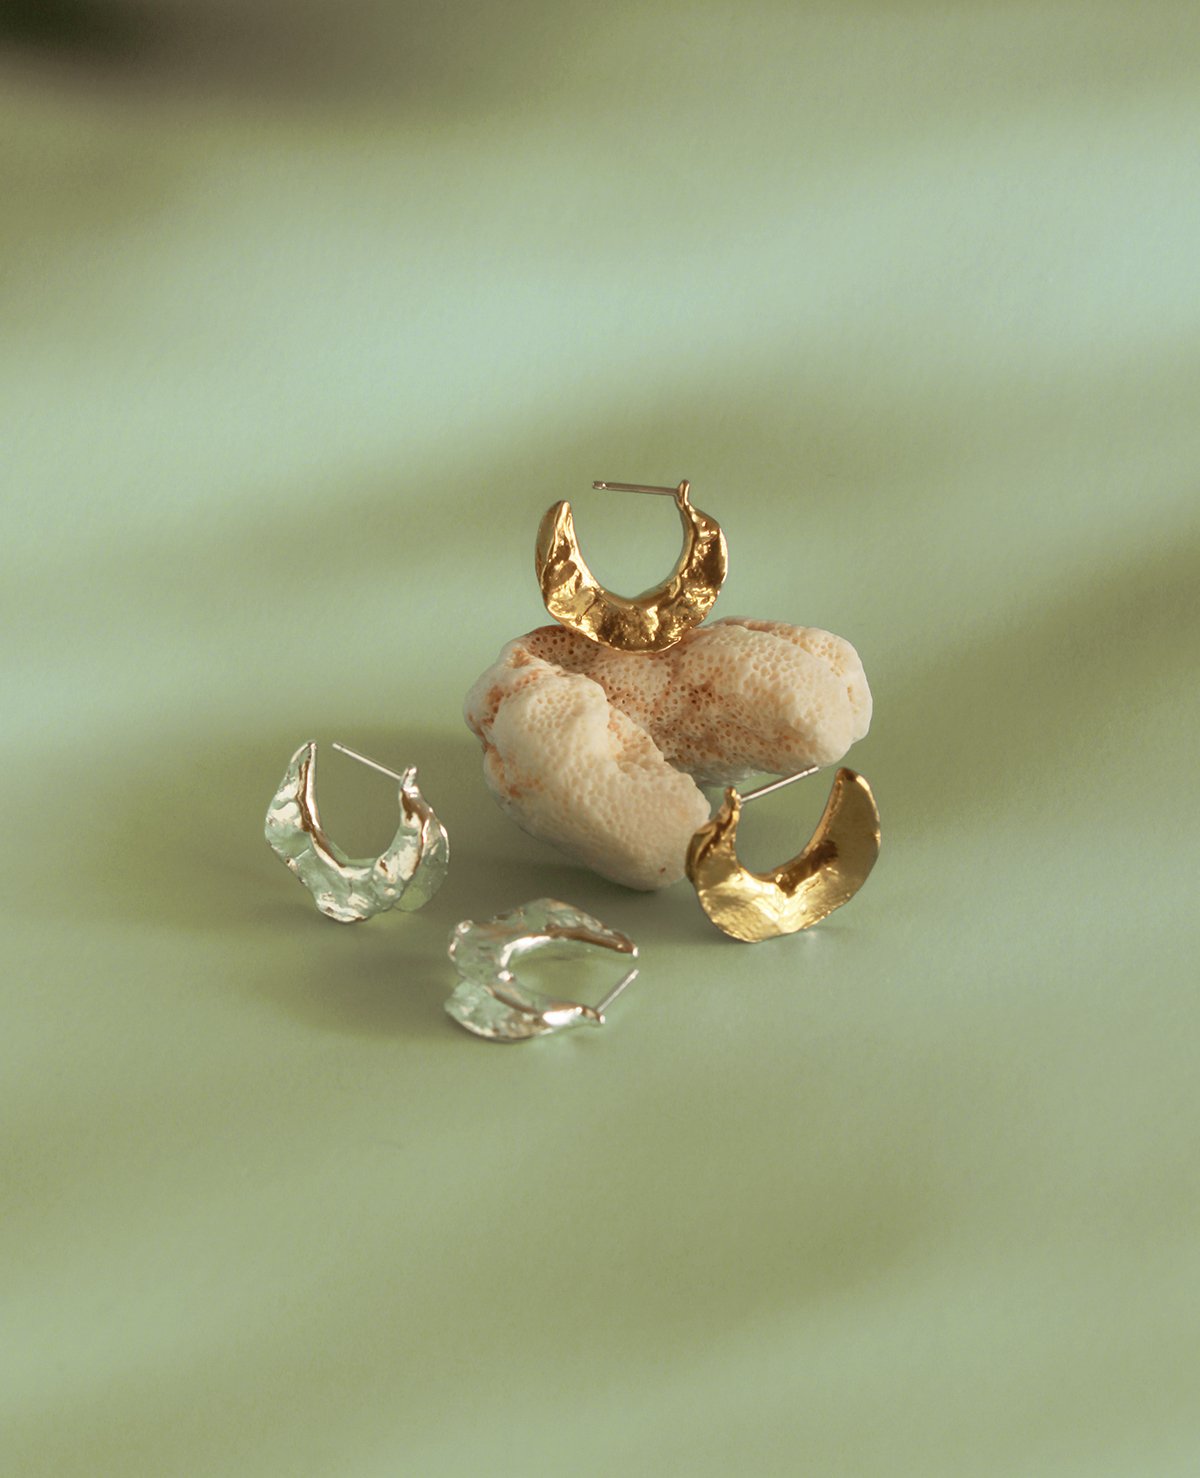 LIBRA MOON // anneaux en argent - ORA-C jewelry - bijoux faits à la main par Caroline Pham, designer indépendante basée à Montréal.